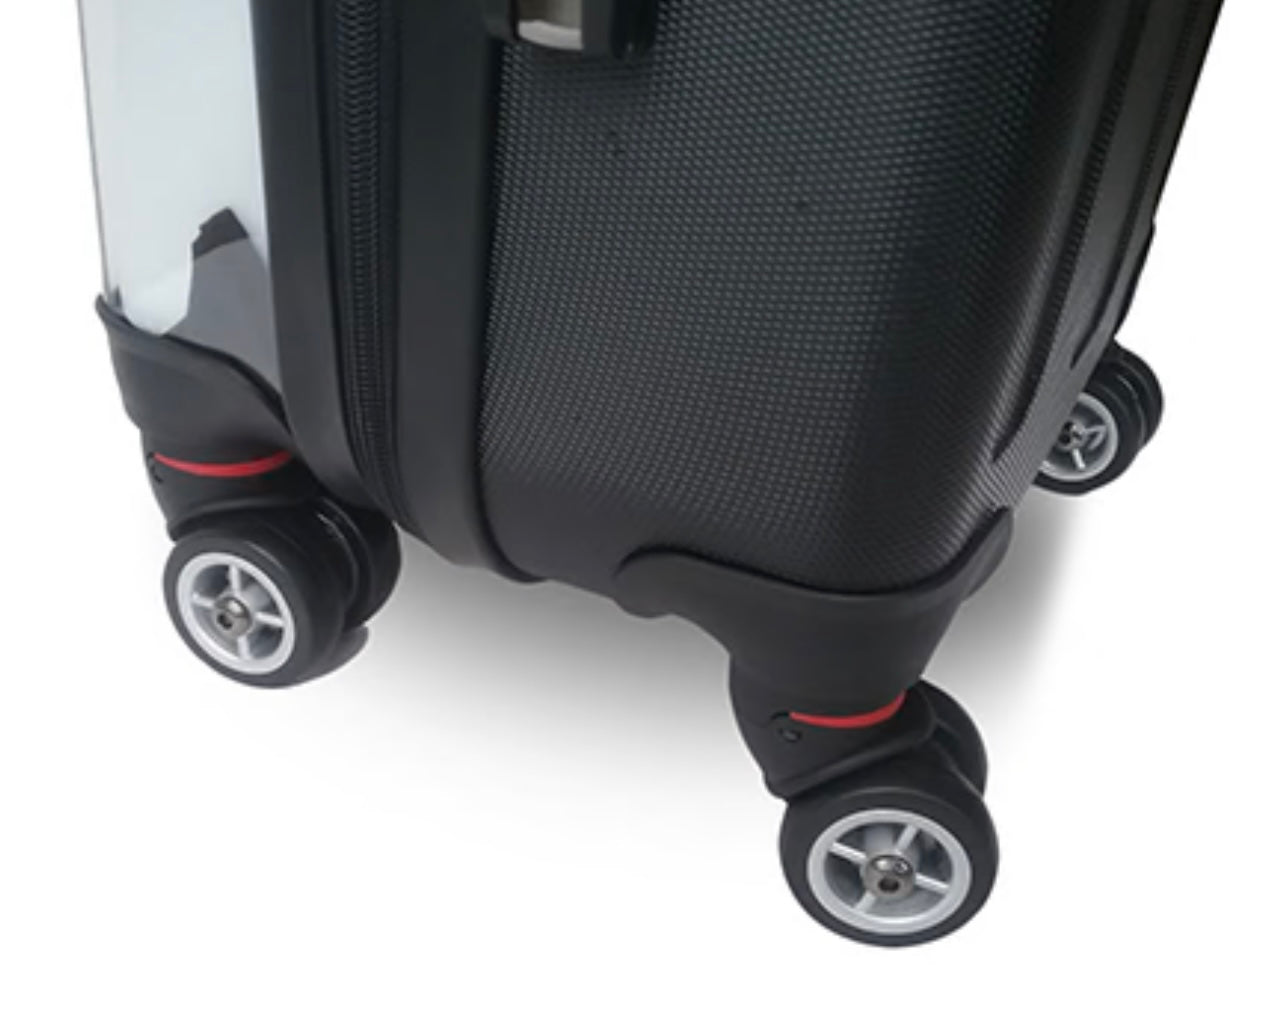 Violet Personalised Suitcase